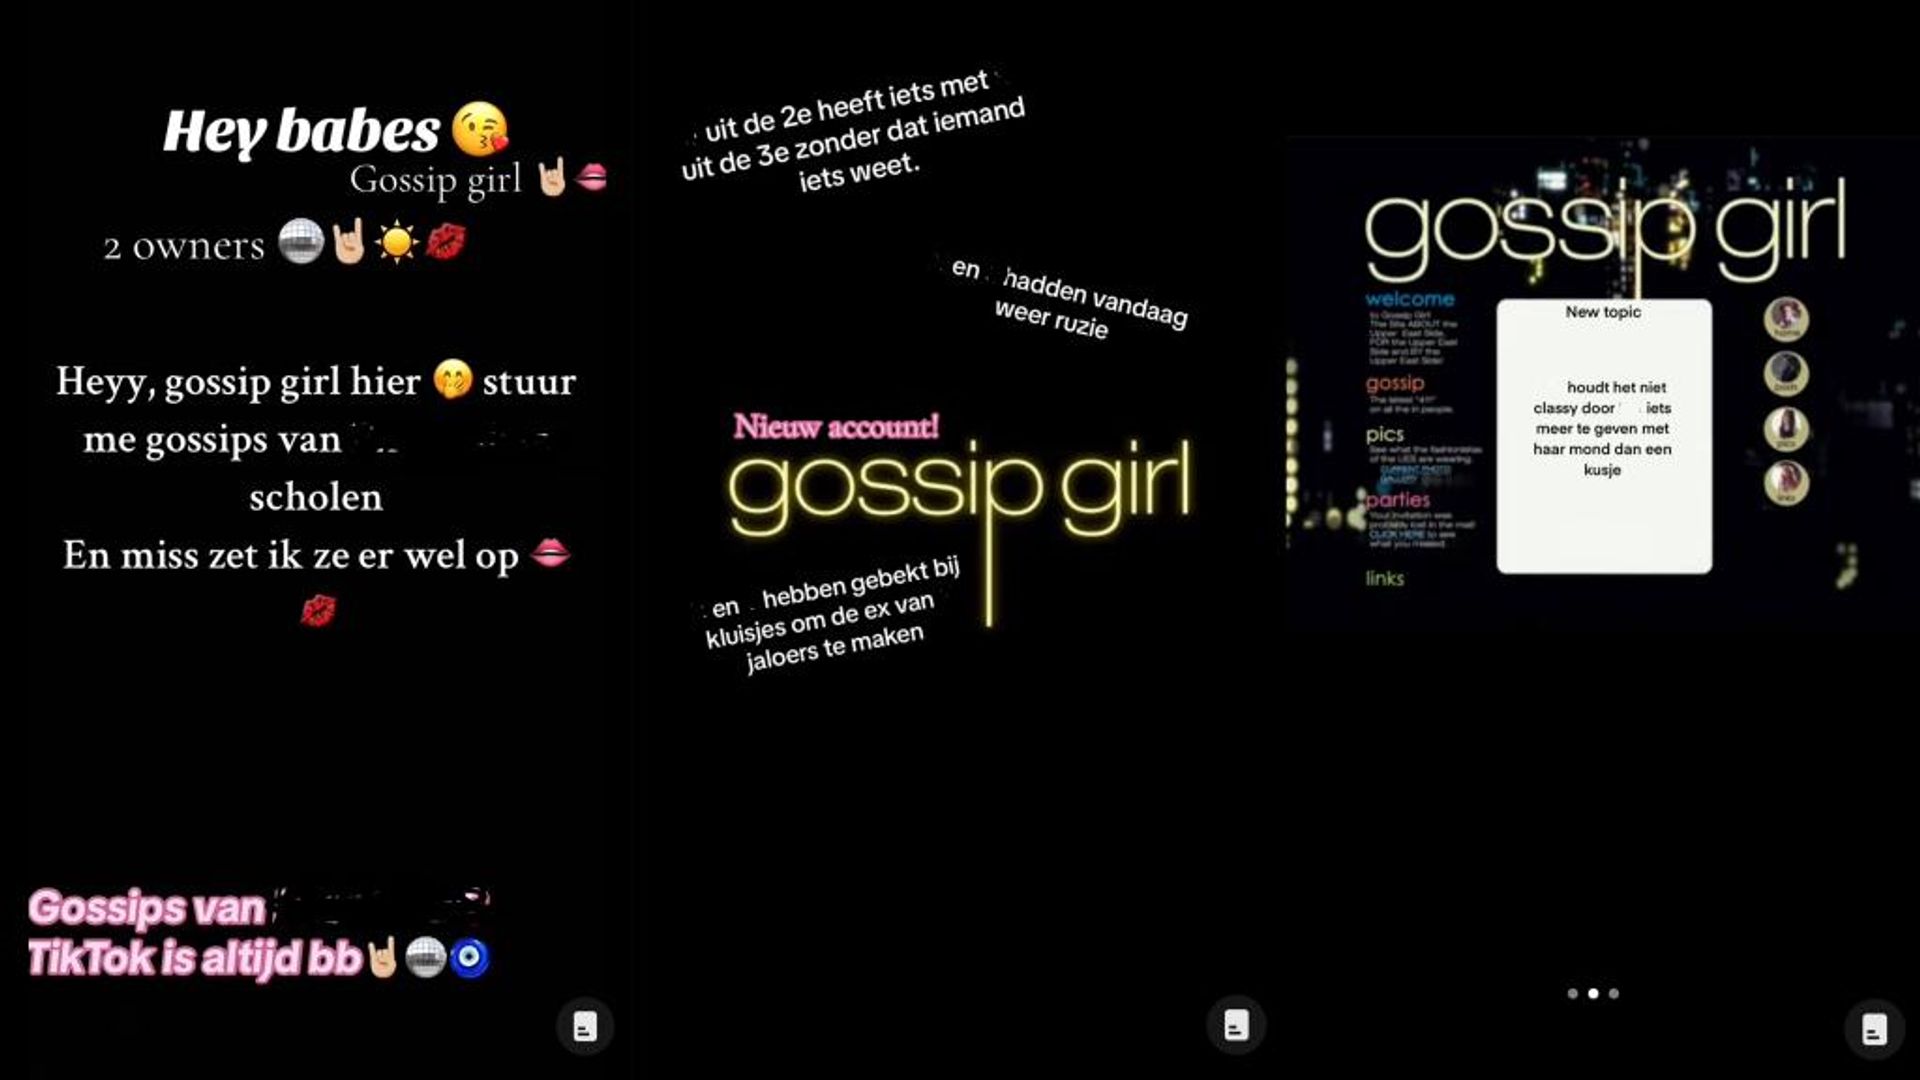 Gossip girl roddel accounts pesten